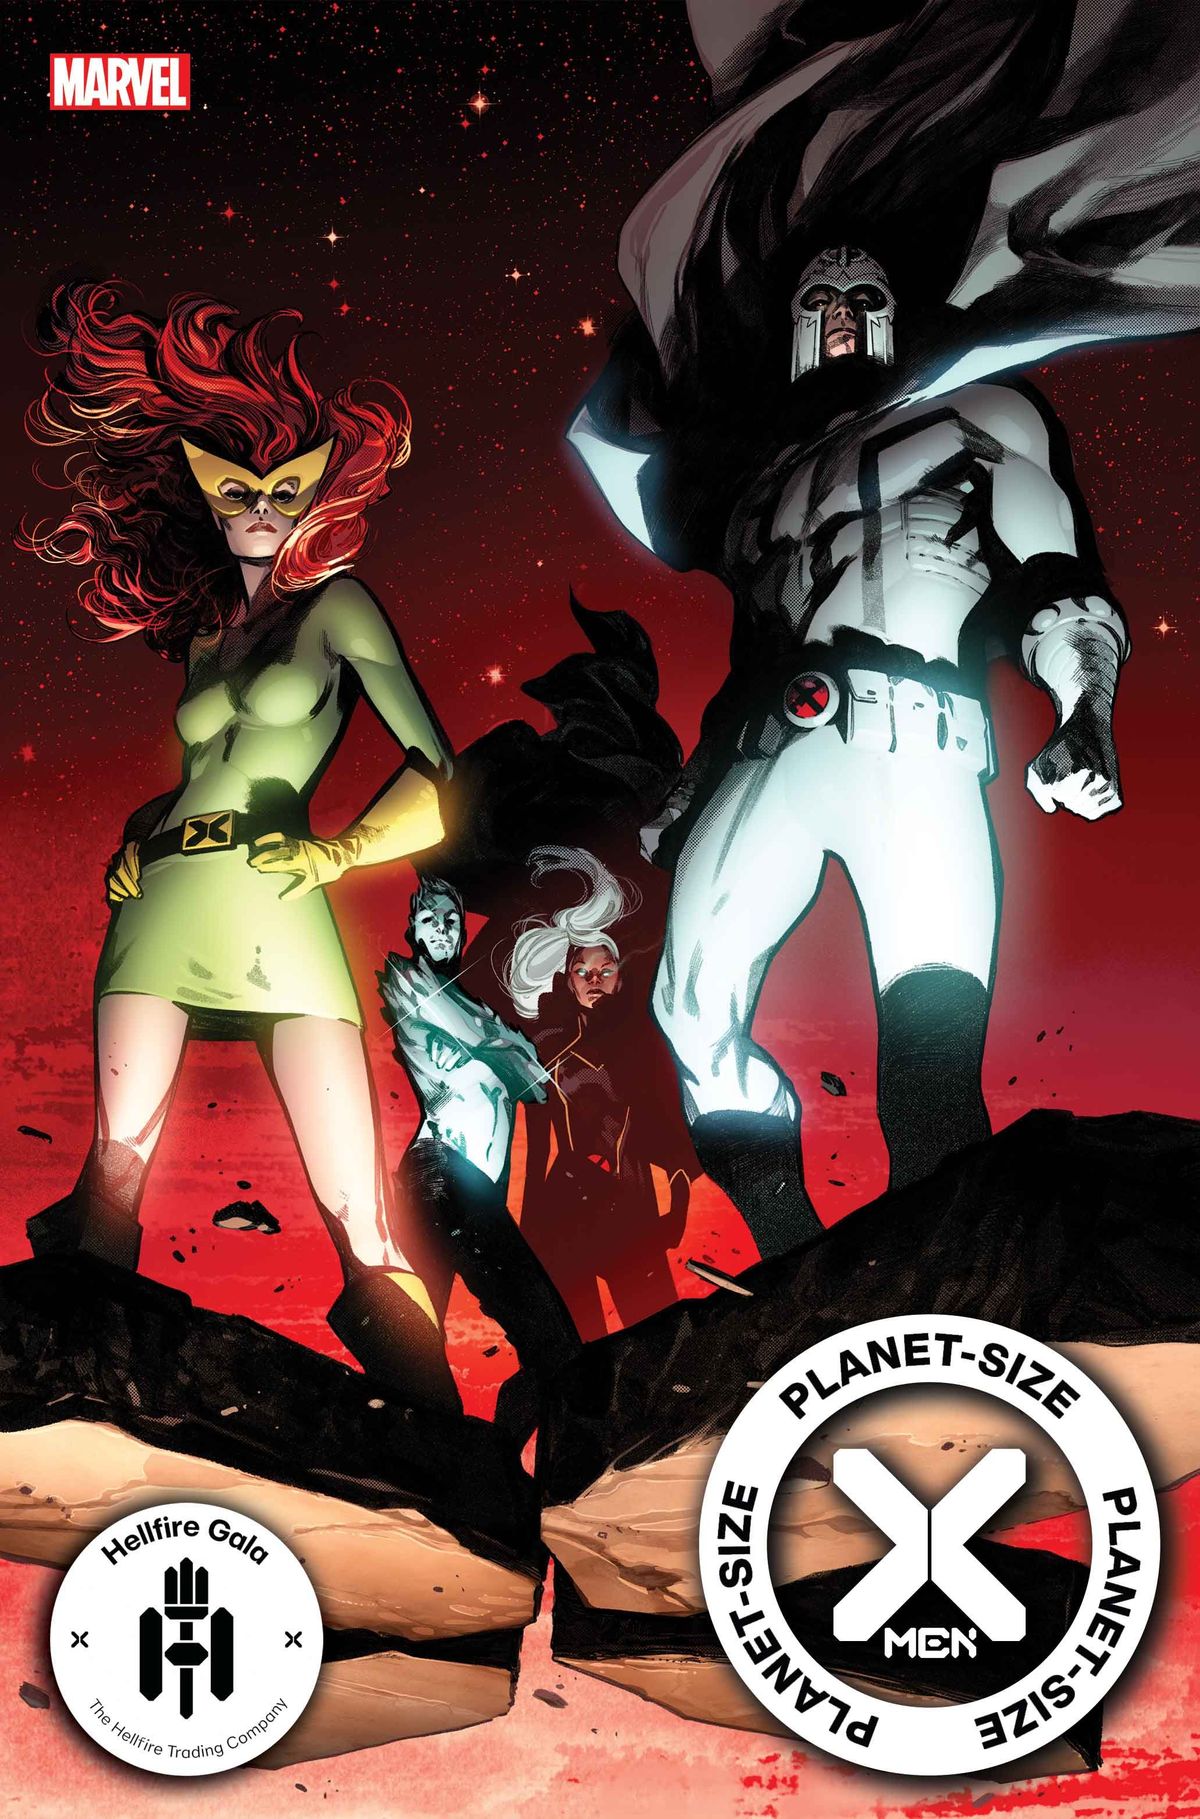 Marvel zapowiada wprowadzenie nowych mutantów na poziomie omega w X-Men wielkości planety